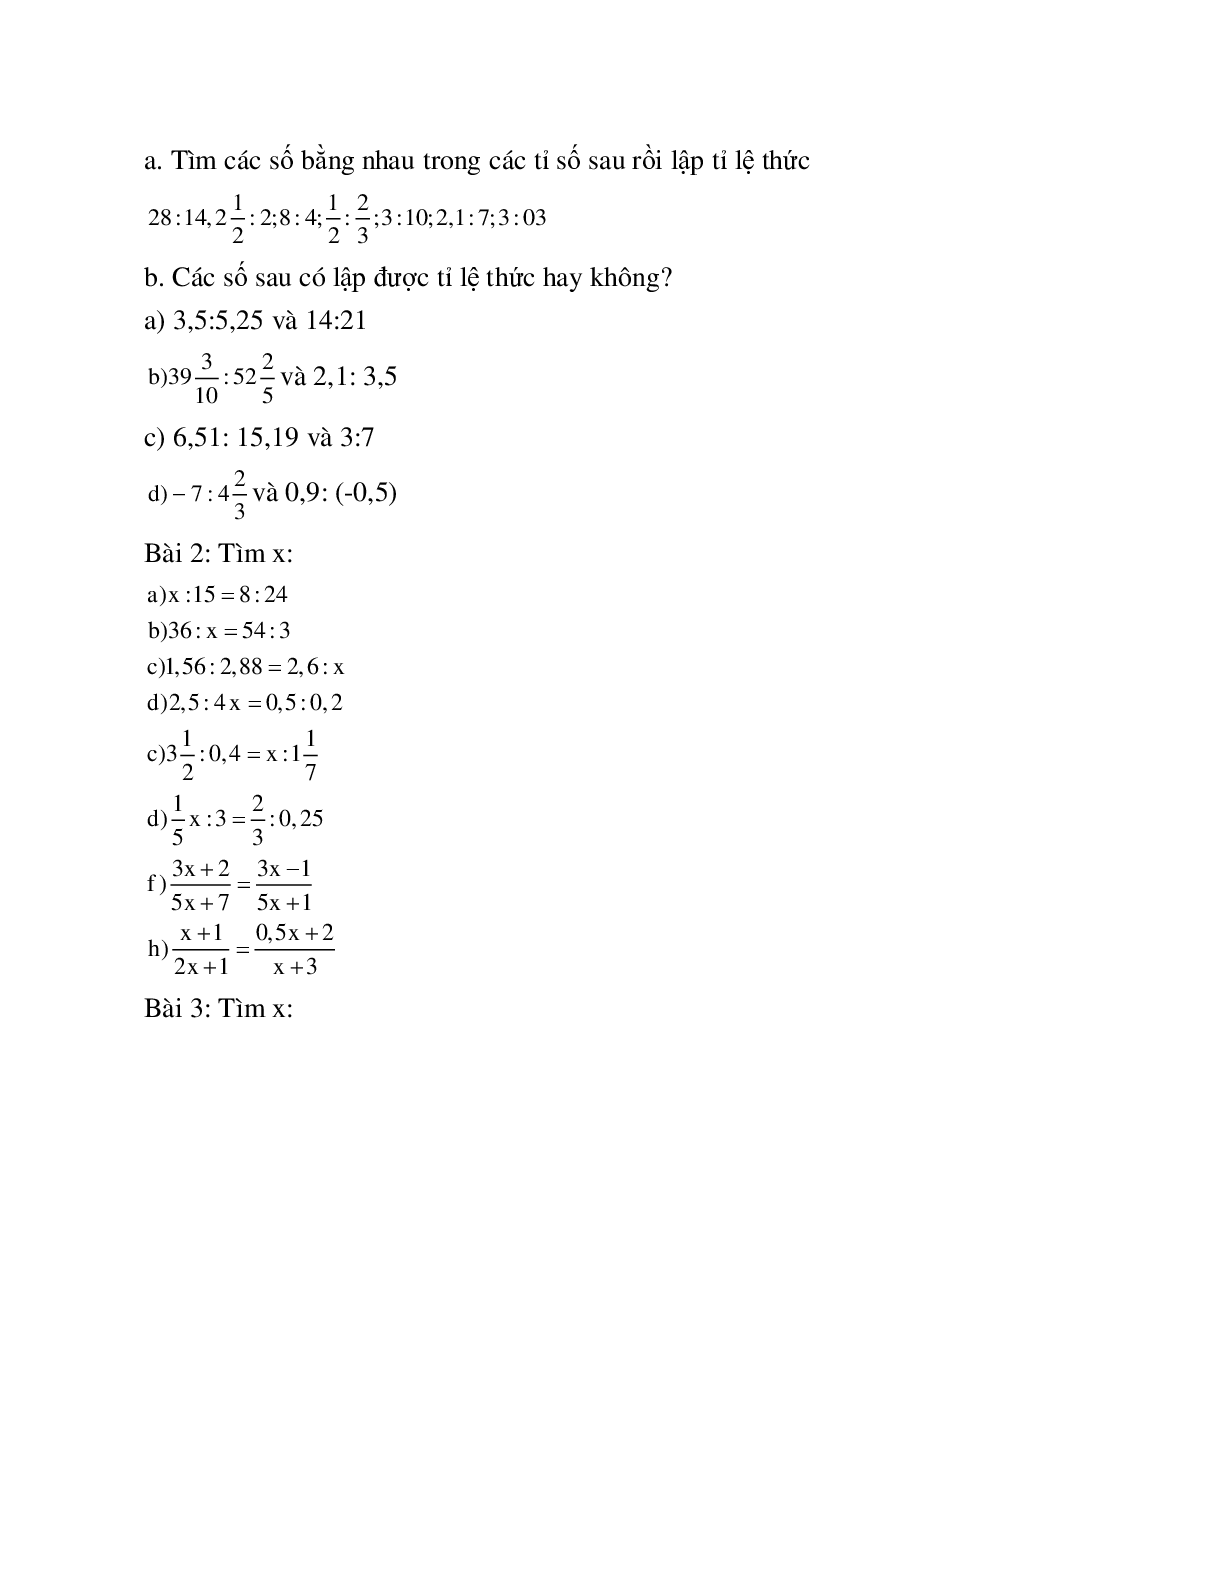 Cách giải Ứng dụng tỉ lệ thức vào tính giá trị các biểu thức, tìm giá trị các biến x,y (trang 2)